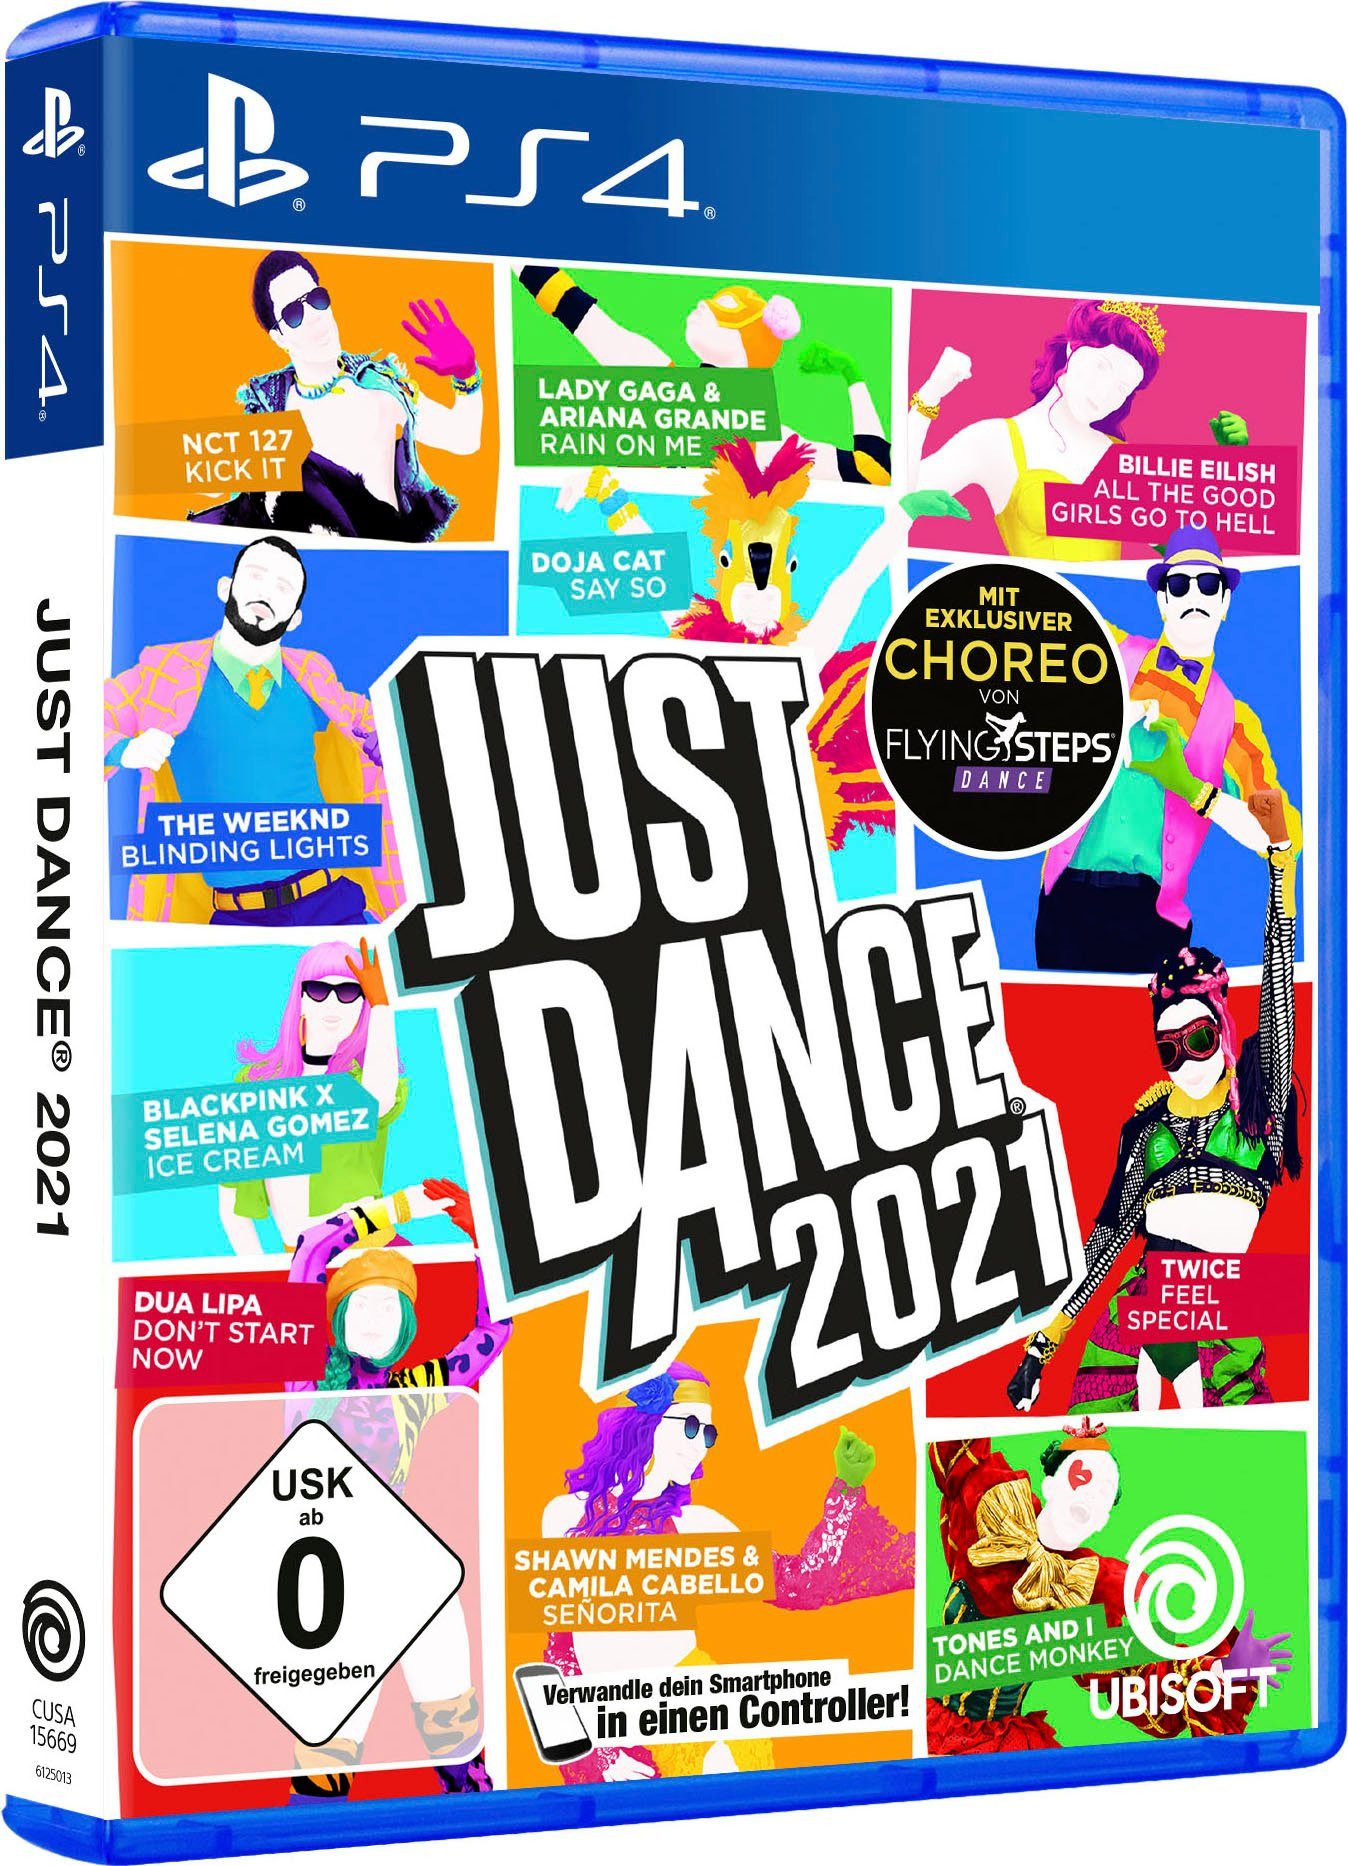 DANCE JUST PlayStation UBISOFT 2021 4